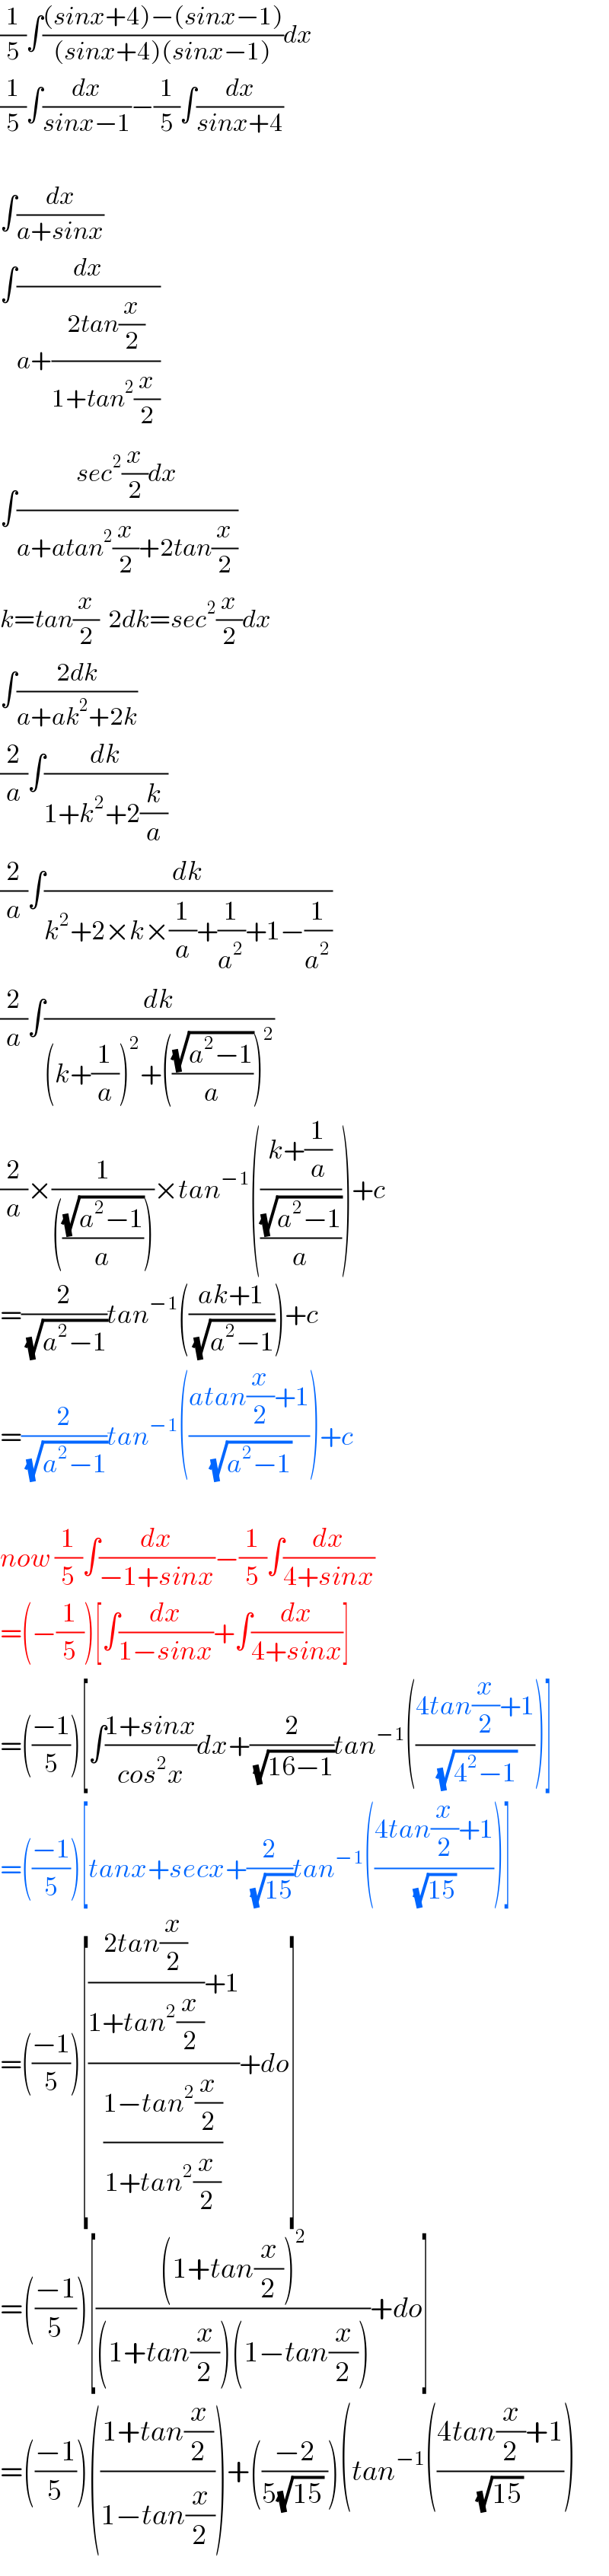 (1/5)∫(((sinx+4)−(sinx−1))/((sinx+4)(sinx−1)))dx  (1/5)∫(dx/(sinx−1))−(1/5)∫(dx/(sinx+4))    ∫(dx/(a+sinx))  ∫(dx/(a+((2tan(x/2))/(1+tan^2 (x/2)))))  ∫((sec^2 (x/2)dx)/(a+atan^2 (x/2)+2tan(x/2)))  k=tan(x/2)  2dk=sec^2 (x/2)dx  ∫((2dk)/(a+ak^2 +2k))  (2/a)∫(dk/(1+k^2 +2(k/a)))  (2/a)∫(dk/(k^2 +2×k×(1/a)+(1/a^2 )+1−(1/a^2 )))  (2/a)∫(dk/((k+(1/a))^2 +(((√(a^2 −1))/a))^2 ))  (2/a)×(1/((((√(a^2 −1))/a))))×tan^(−1) (((k+(1/a))/((√(a^2 −1))/a)))+c  =(2/(√(a^2 −1)))tan^(−1) (((ak+1)/(√(a^2 −1))))+c  =(2/(√(a^2 −1)))tan^(−1) (((atan(x/2)+1)/(√(a^2 −1))))+c    now (1/5)∫(dx/(−1+sinx))−(1/5)∫(dx/(4+sinx))  =(−(1/5))[∫(dx/(1−sinx))+∫(dx/(4+sinx))]  =(((−1)/5))[∫((1+sinx)/(cos^2 x))dx+(2/(√(16−1)))tan^(−1) (((4tan(x/2)+1)/(√(4^2 −1))))]  =(((−1)/5))[tanx+secx+(2/(√(15)))tan^(−1) (((4tan(x/2)+1)/(√(15))))]  =(((−1)/5))[((((2tan(x/2))/(1+tan^2 (x/2)))+1)/((1−tan^2 (x/2))/(1+tan^2 (x/2))))+do]  =(((−1)/5))[(((1+tan(x/2))^2 )/((1+tan(x/2))(1−tan(x/2))))+do]  =(((−1)/5))(((1+tan(x/2))/(1−tan(x/2))))+(((−2)/(5(√(15)) )))(tan^(−1) (((4tan(x/2)+1)/((√(15)) )))  